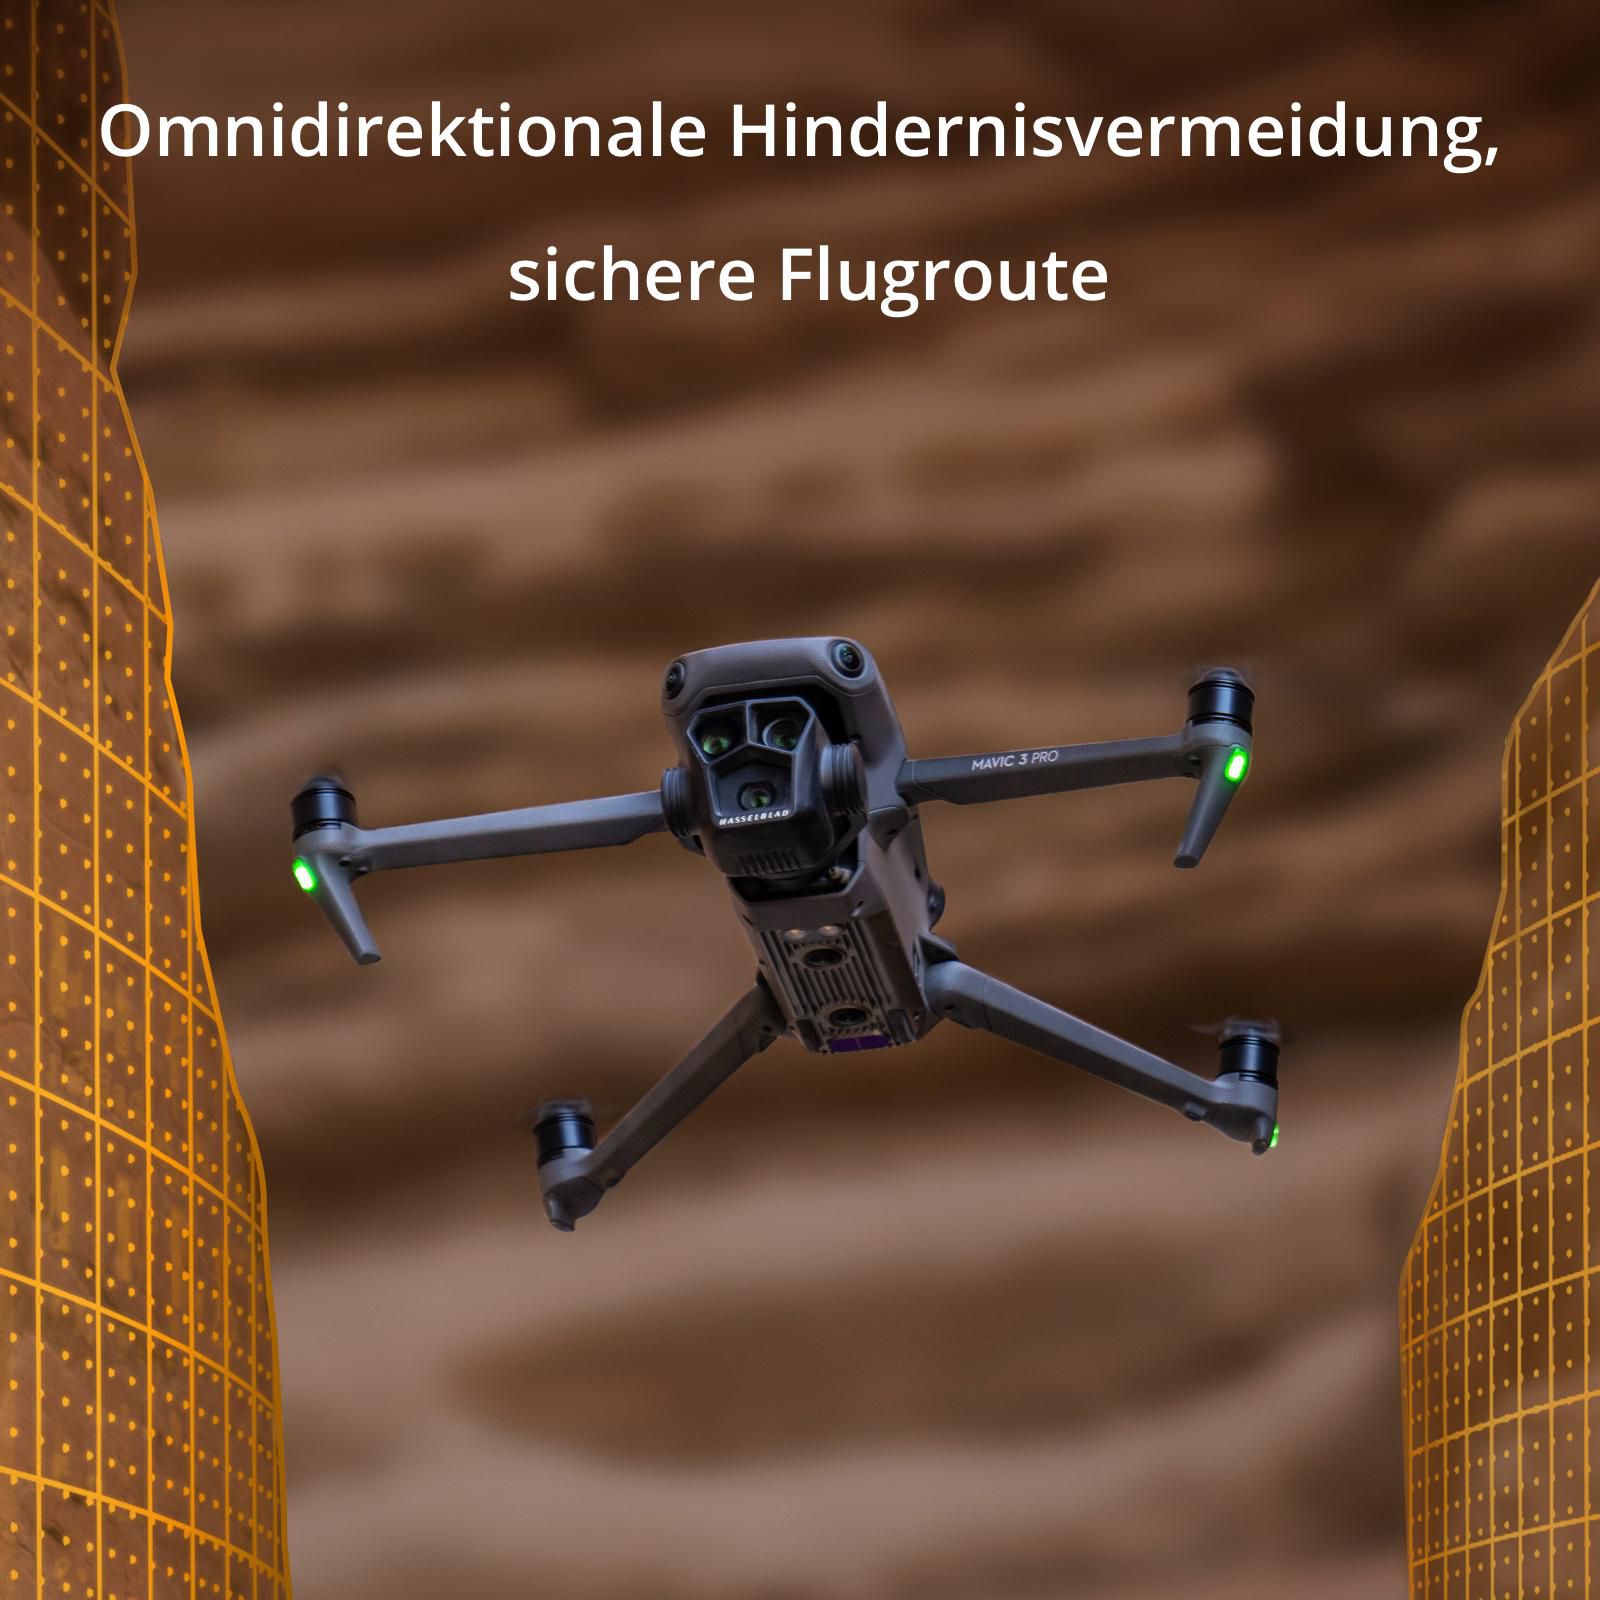 3 Grau/Schwarz Combo Drohne, DJI More RC) Pro DJI Fly (DJI Mavic